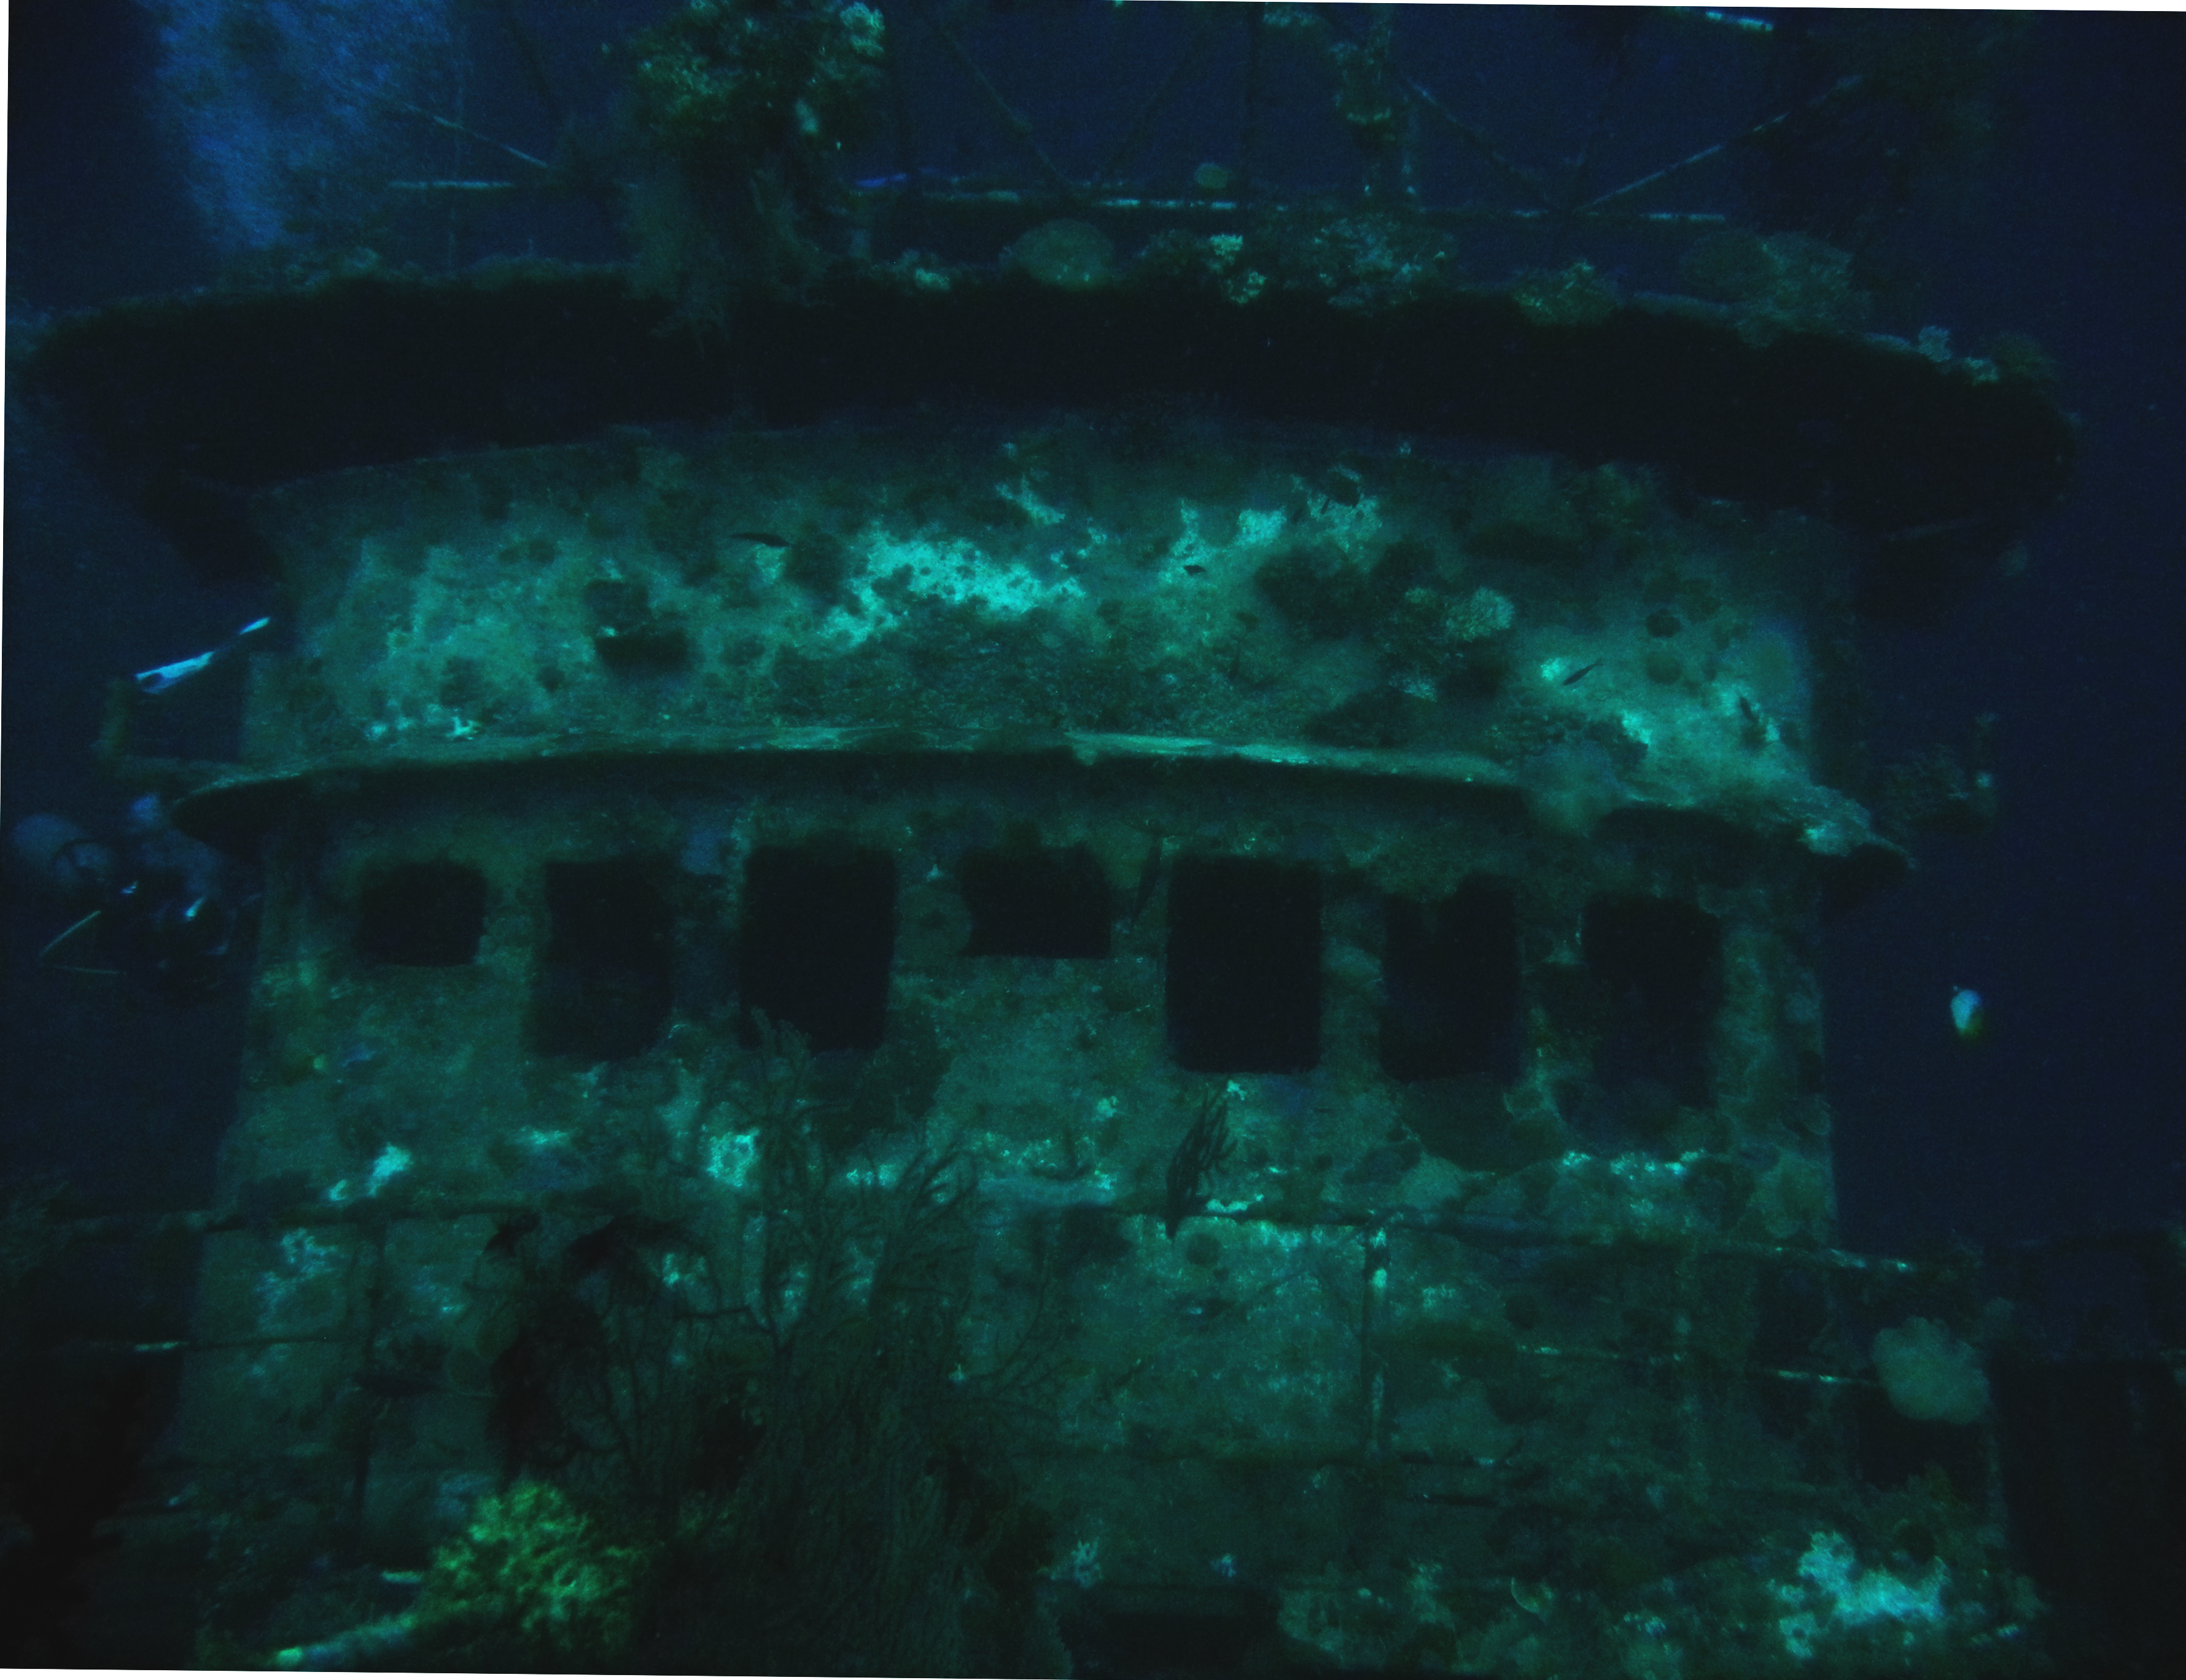 Taiyo Shipwreck